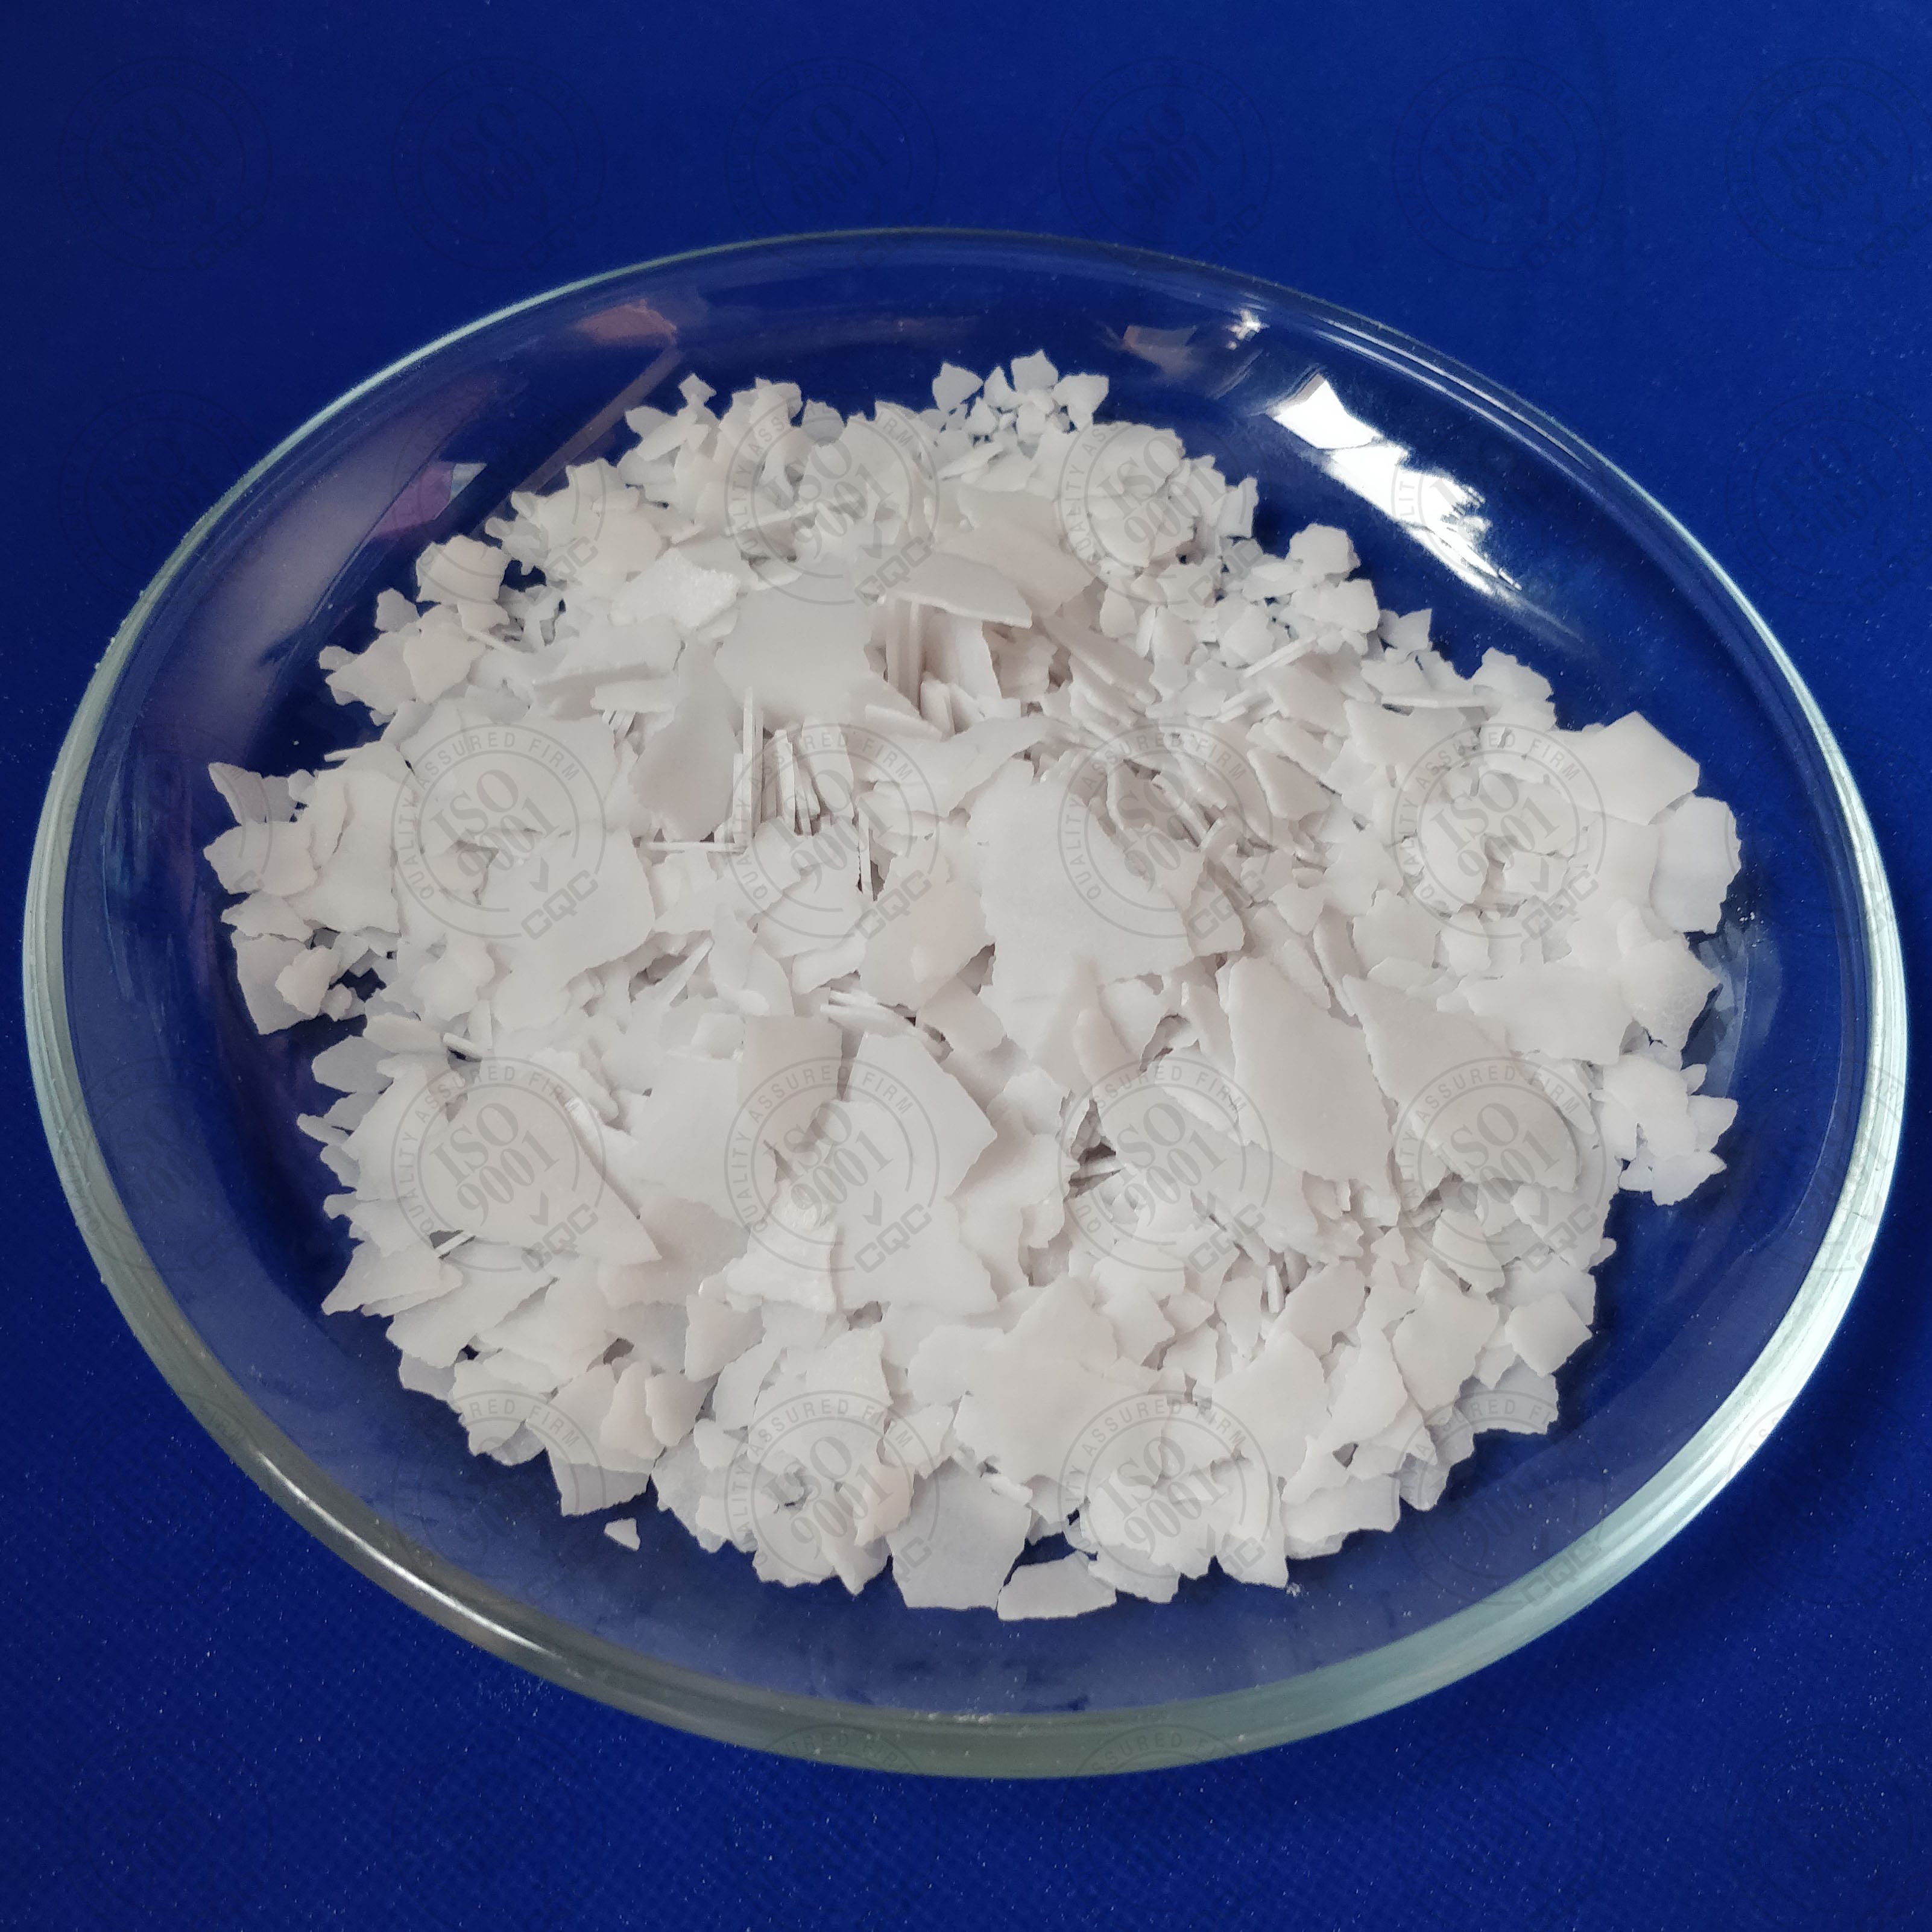 Potassium Hydroxide KOH Caustic Potash - Soap & More